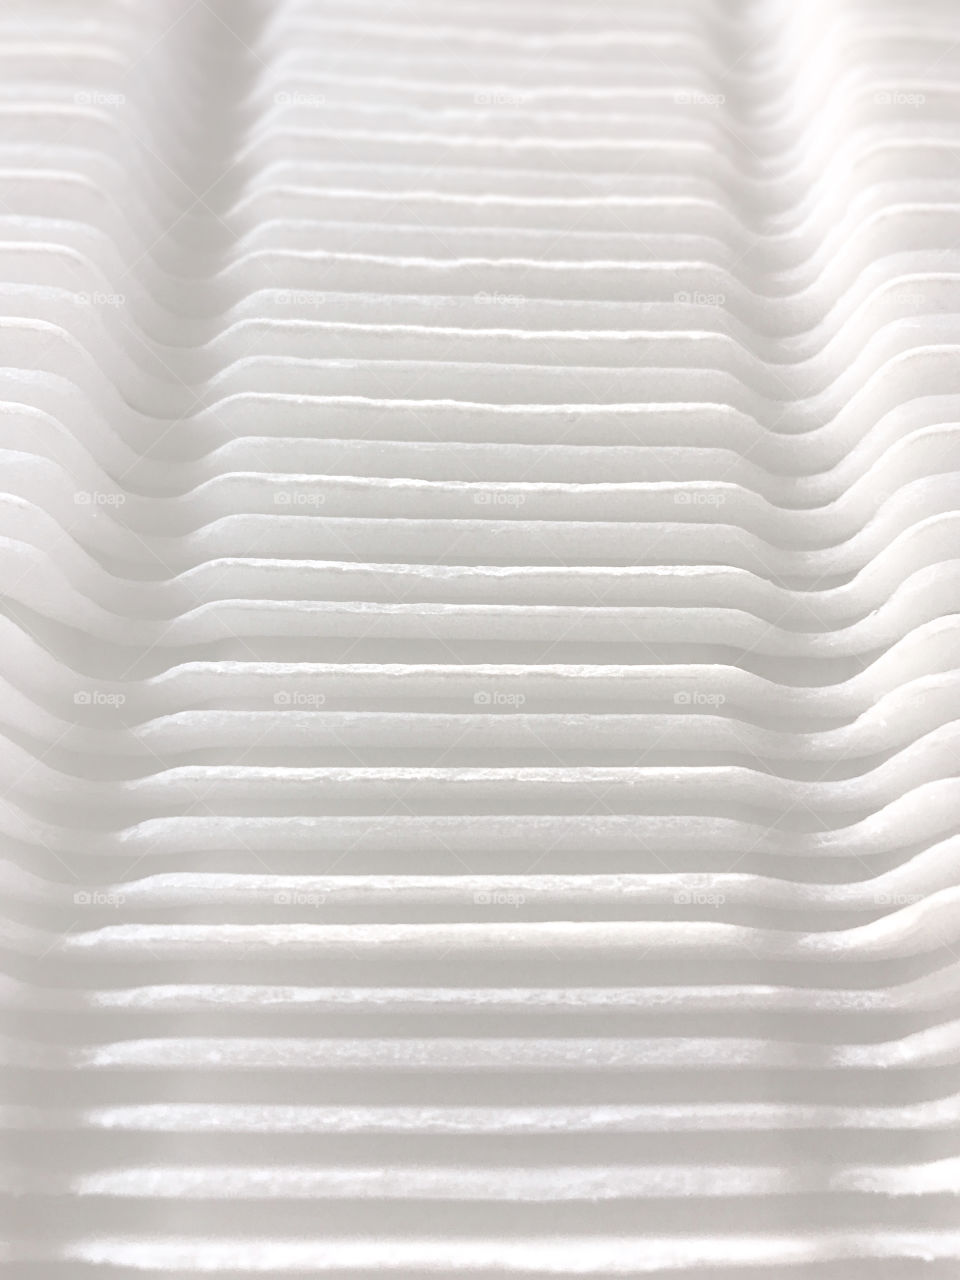 Styrofoam symmetry 